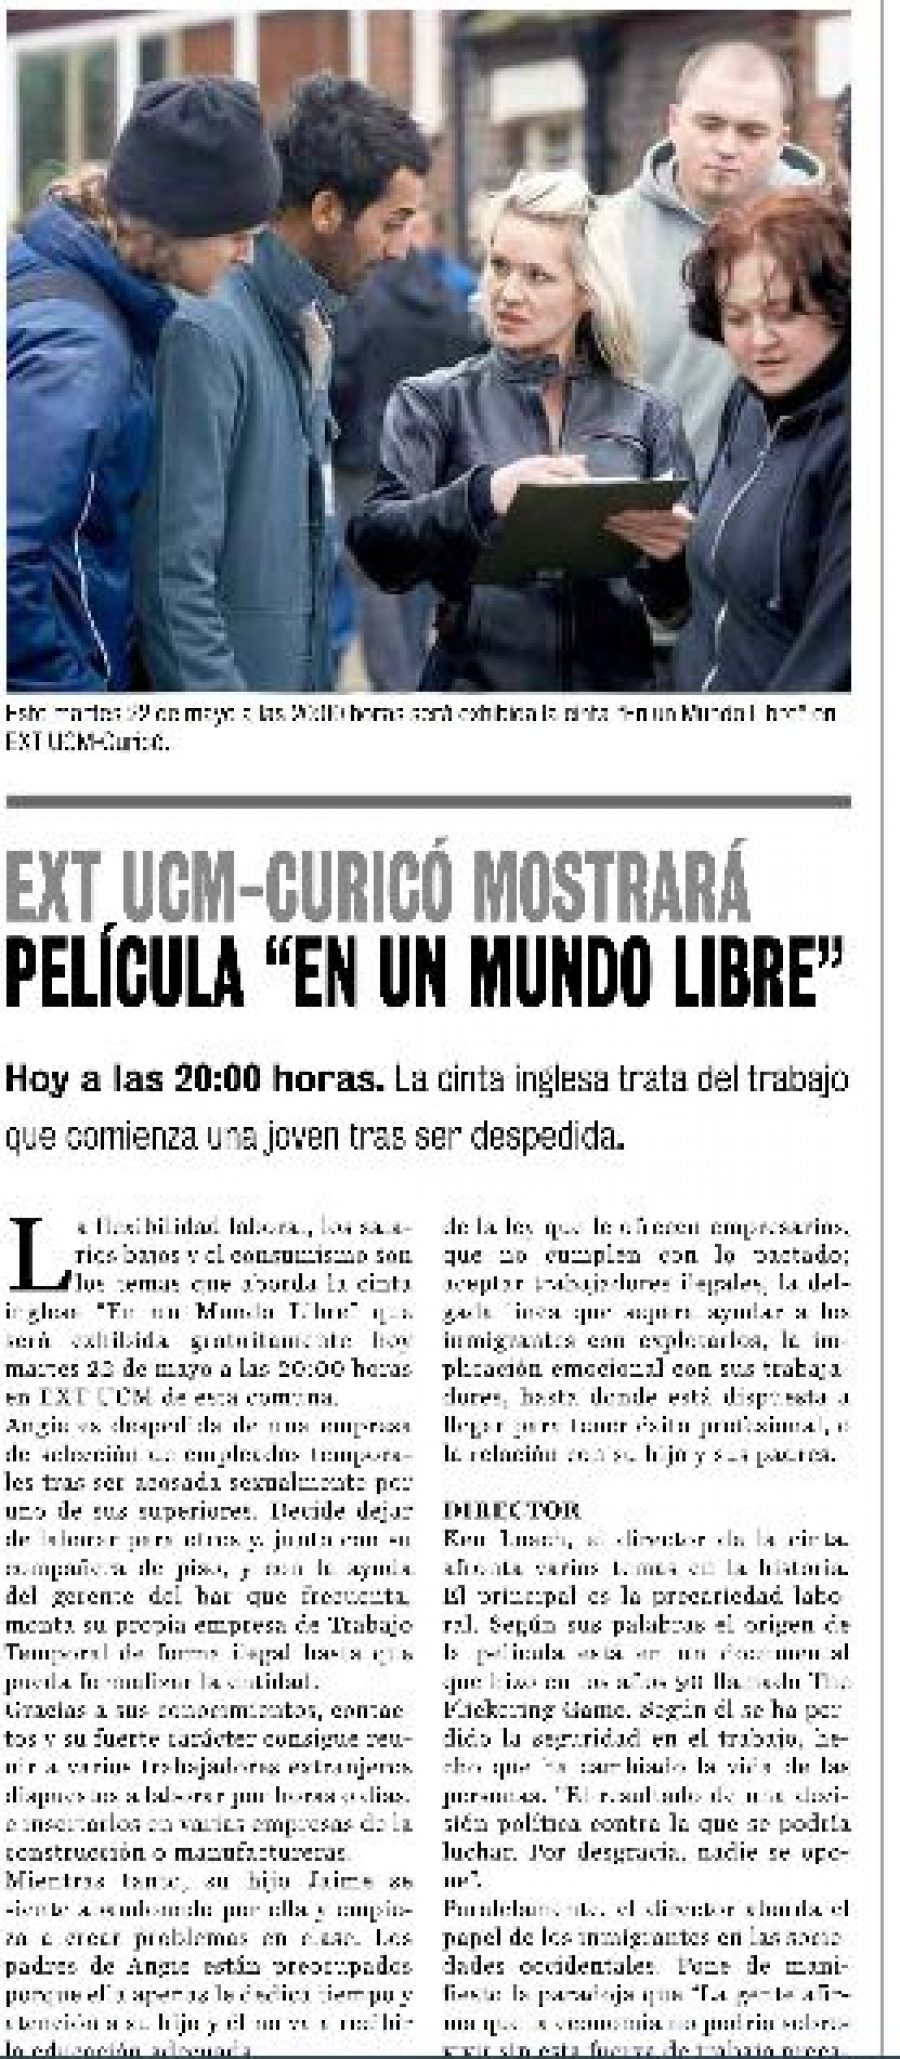 22 de mayo en Diario La Prensa: “EXT UCM Curicó mostrará película “En un Mundo Libre”